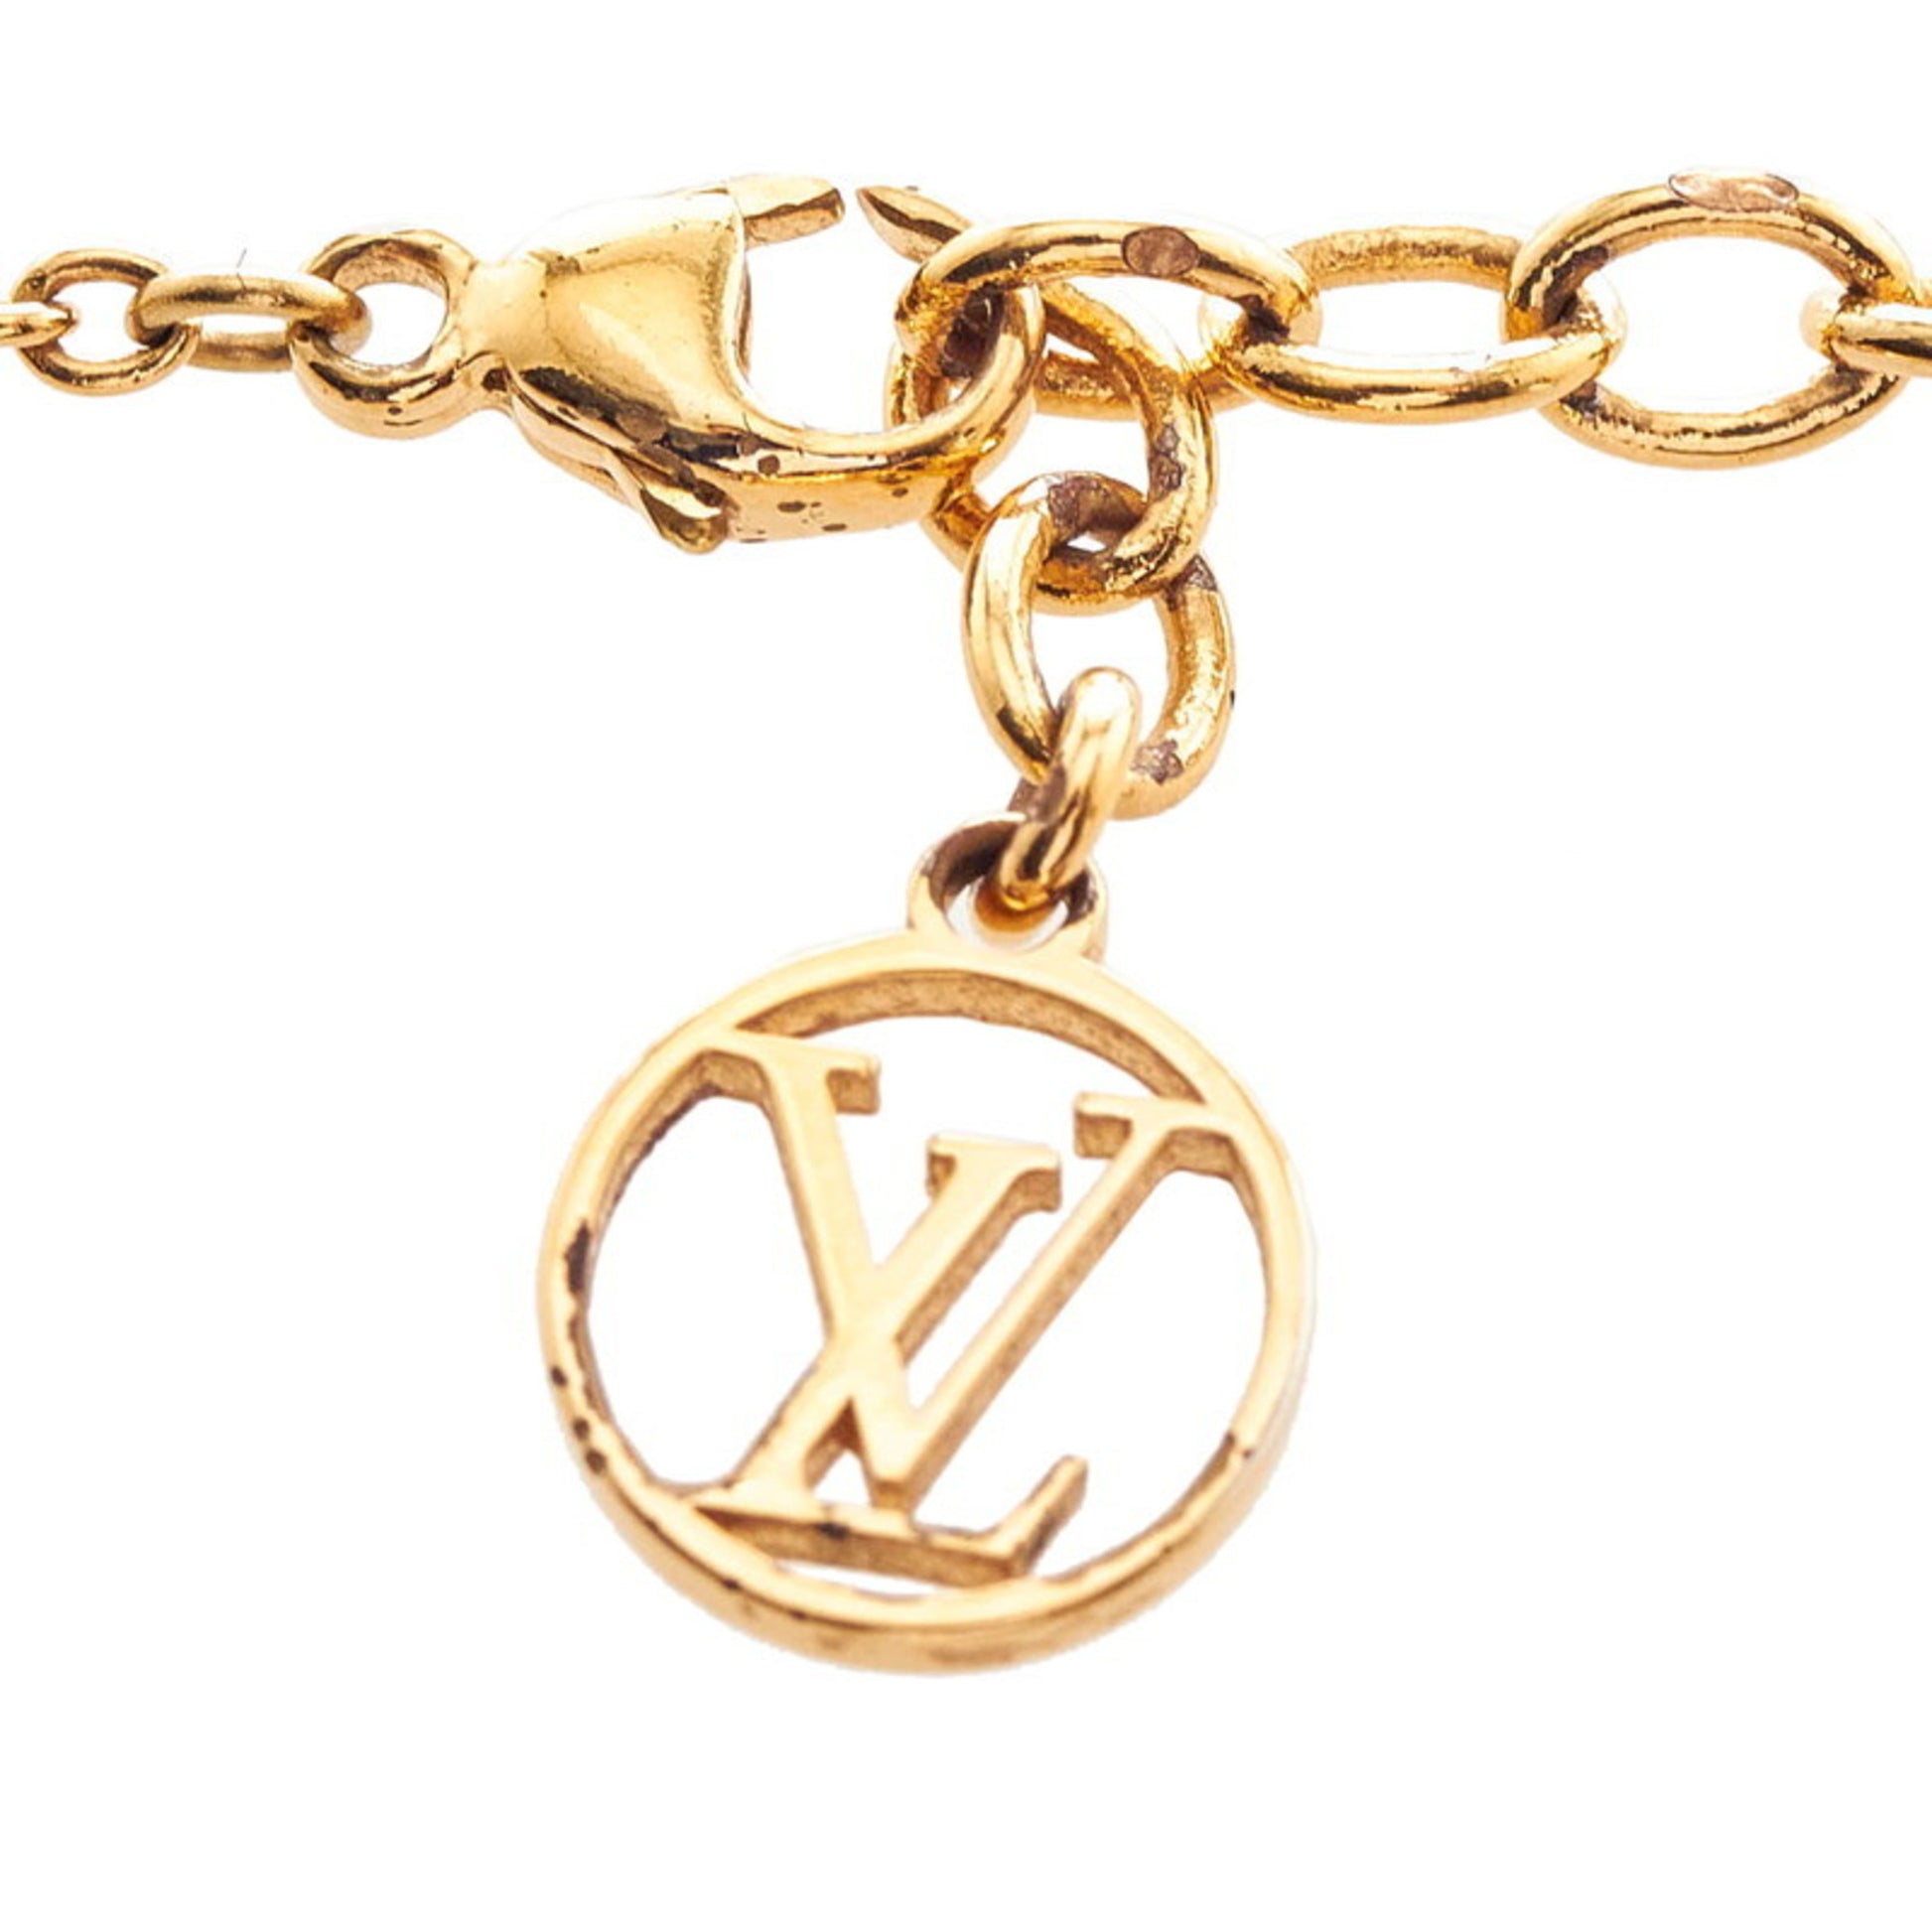 Shop Louis Vuitton 2018-19FW Essential V Necklace (M61083) by SpainSol